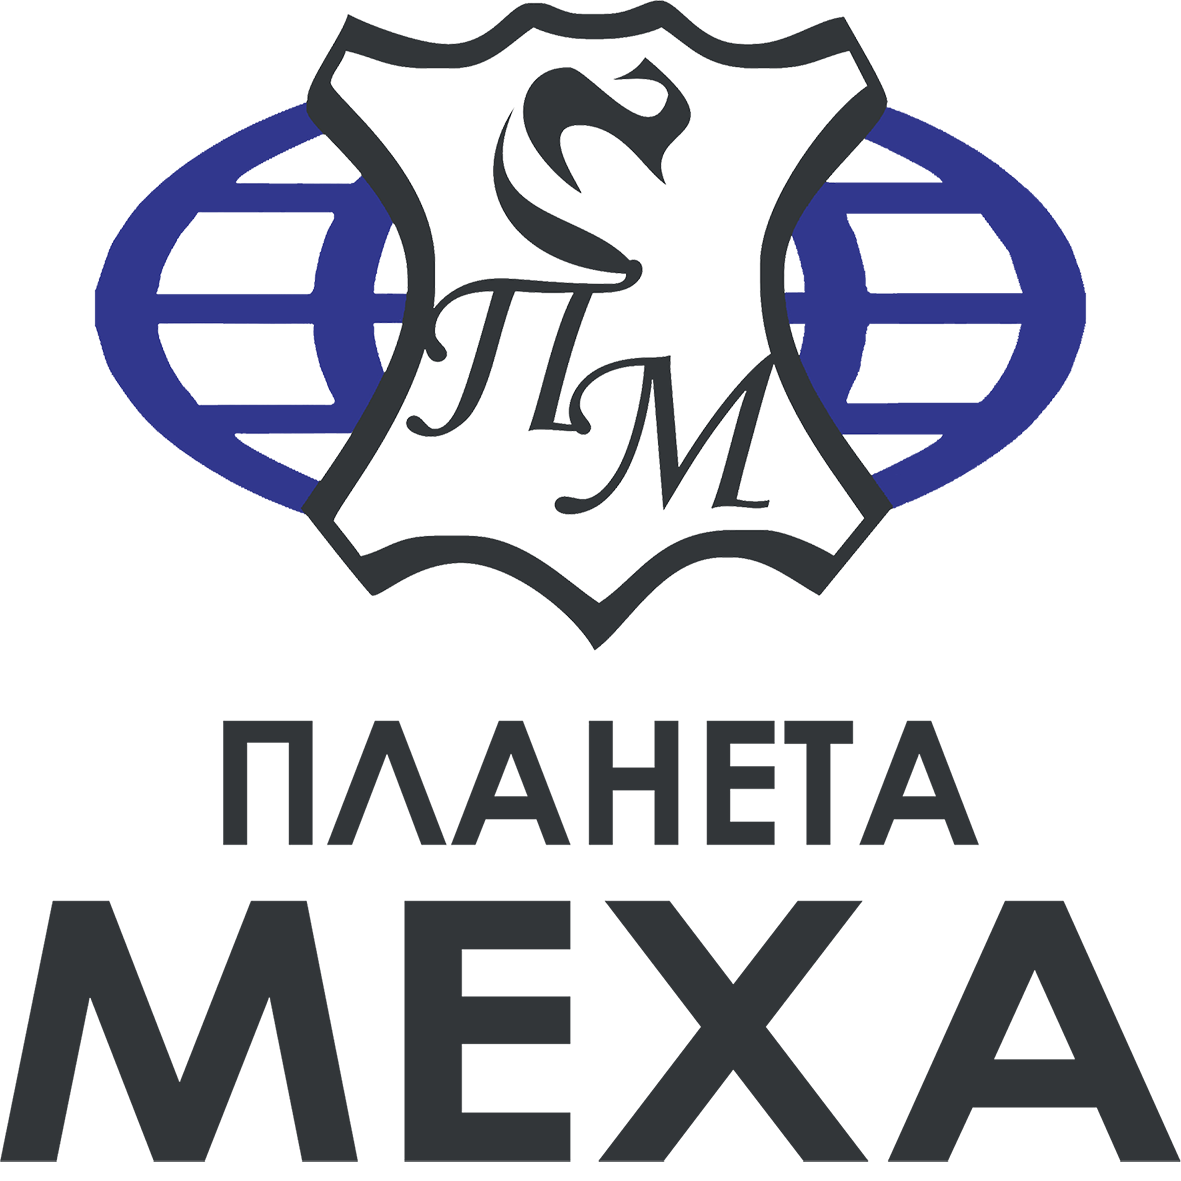 ООО Планета меха - Город Омск logo.png